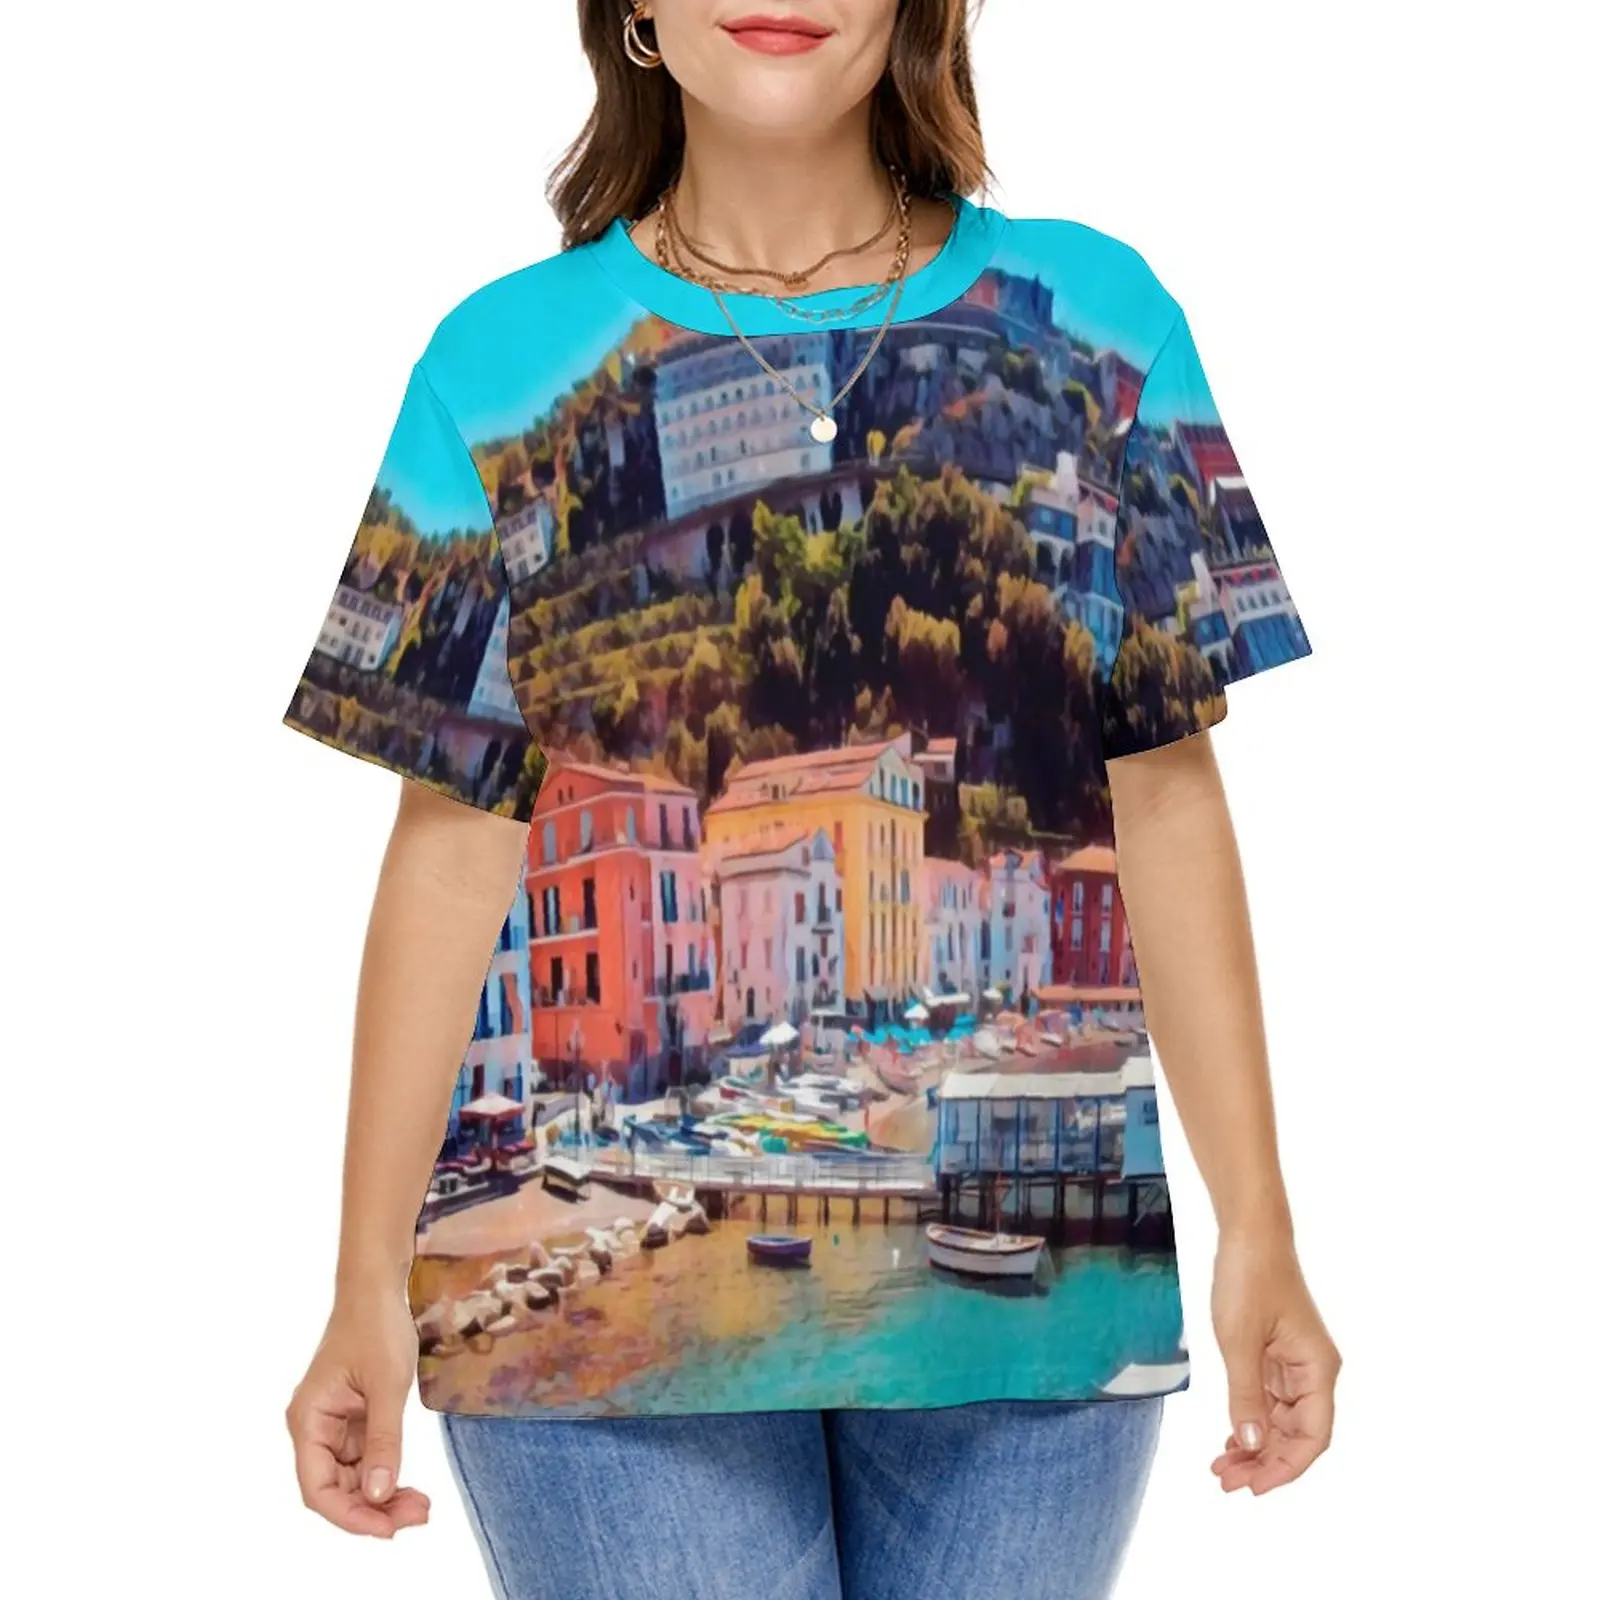 Panorama Beach T Shirts Coast Print Street Fashion T Shirt Short Sleeves Female Pretty Tee Shirt Beach Printed Clothes Plus Size